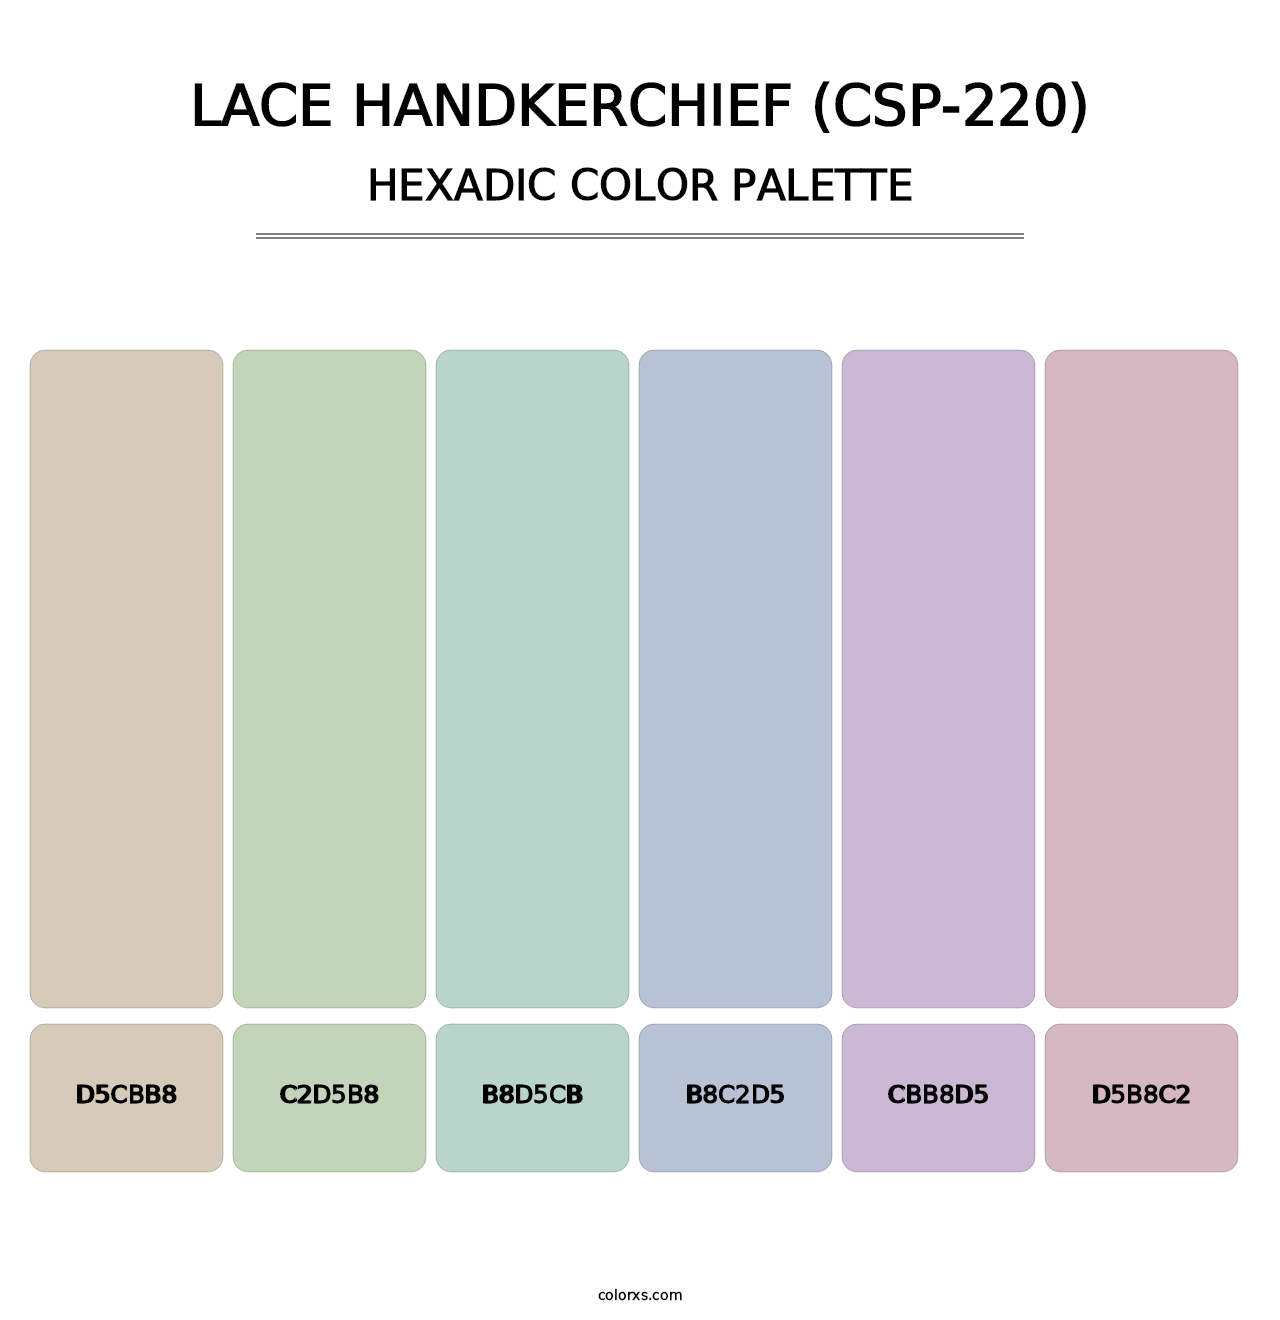 Lace Handkerchief (CSP-220) - Hexadic Color Palette